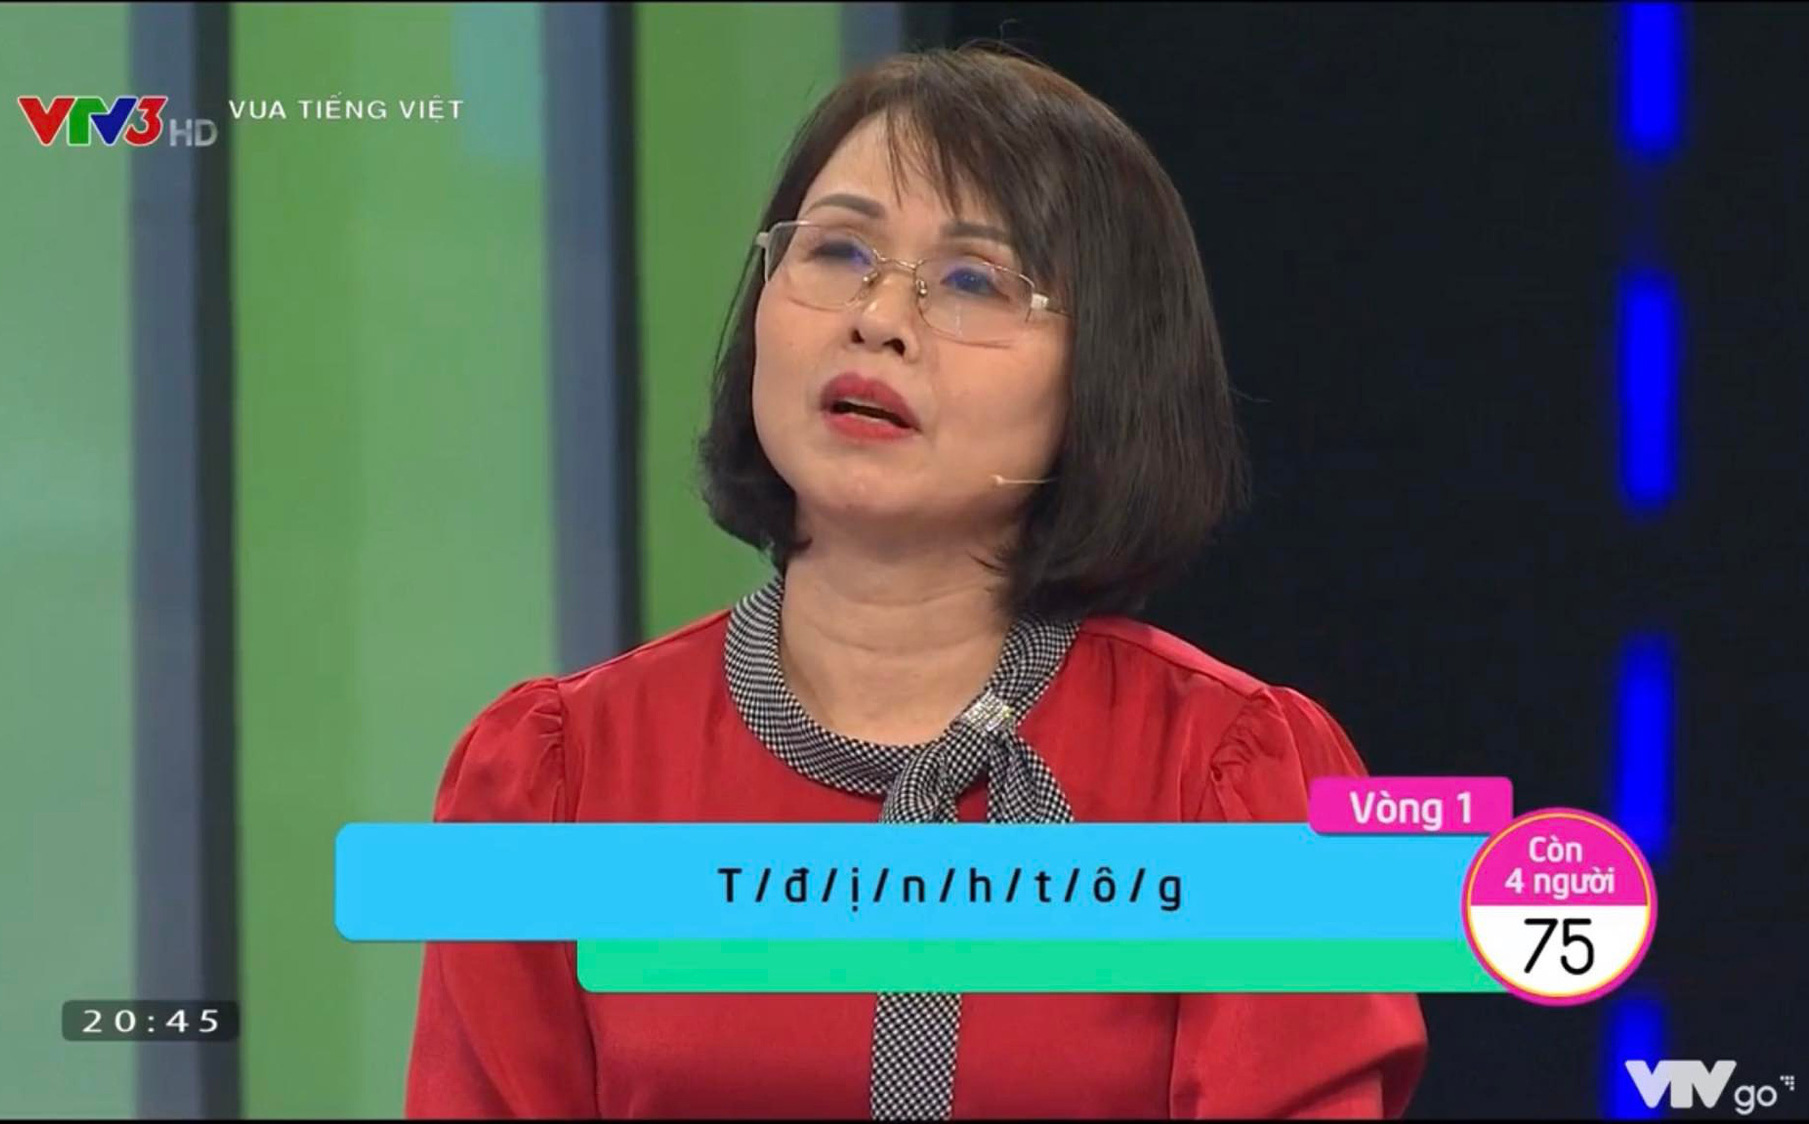 Từ tiếng Việt 8 chữ cái làm nữ thẩm phán nhăn mặt mới nghĩ ra, đáp án nhiều người thèm